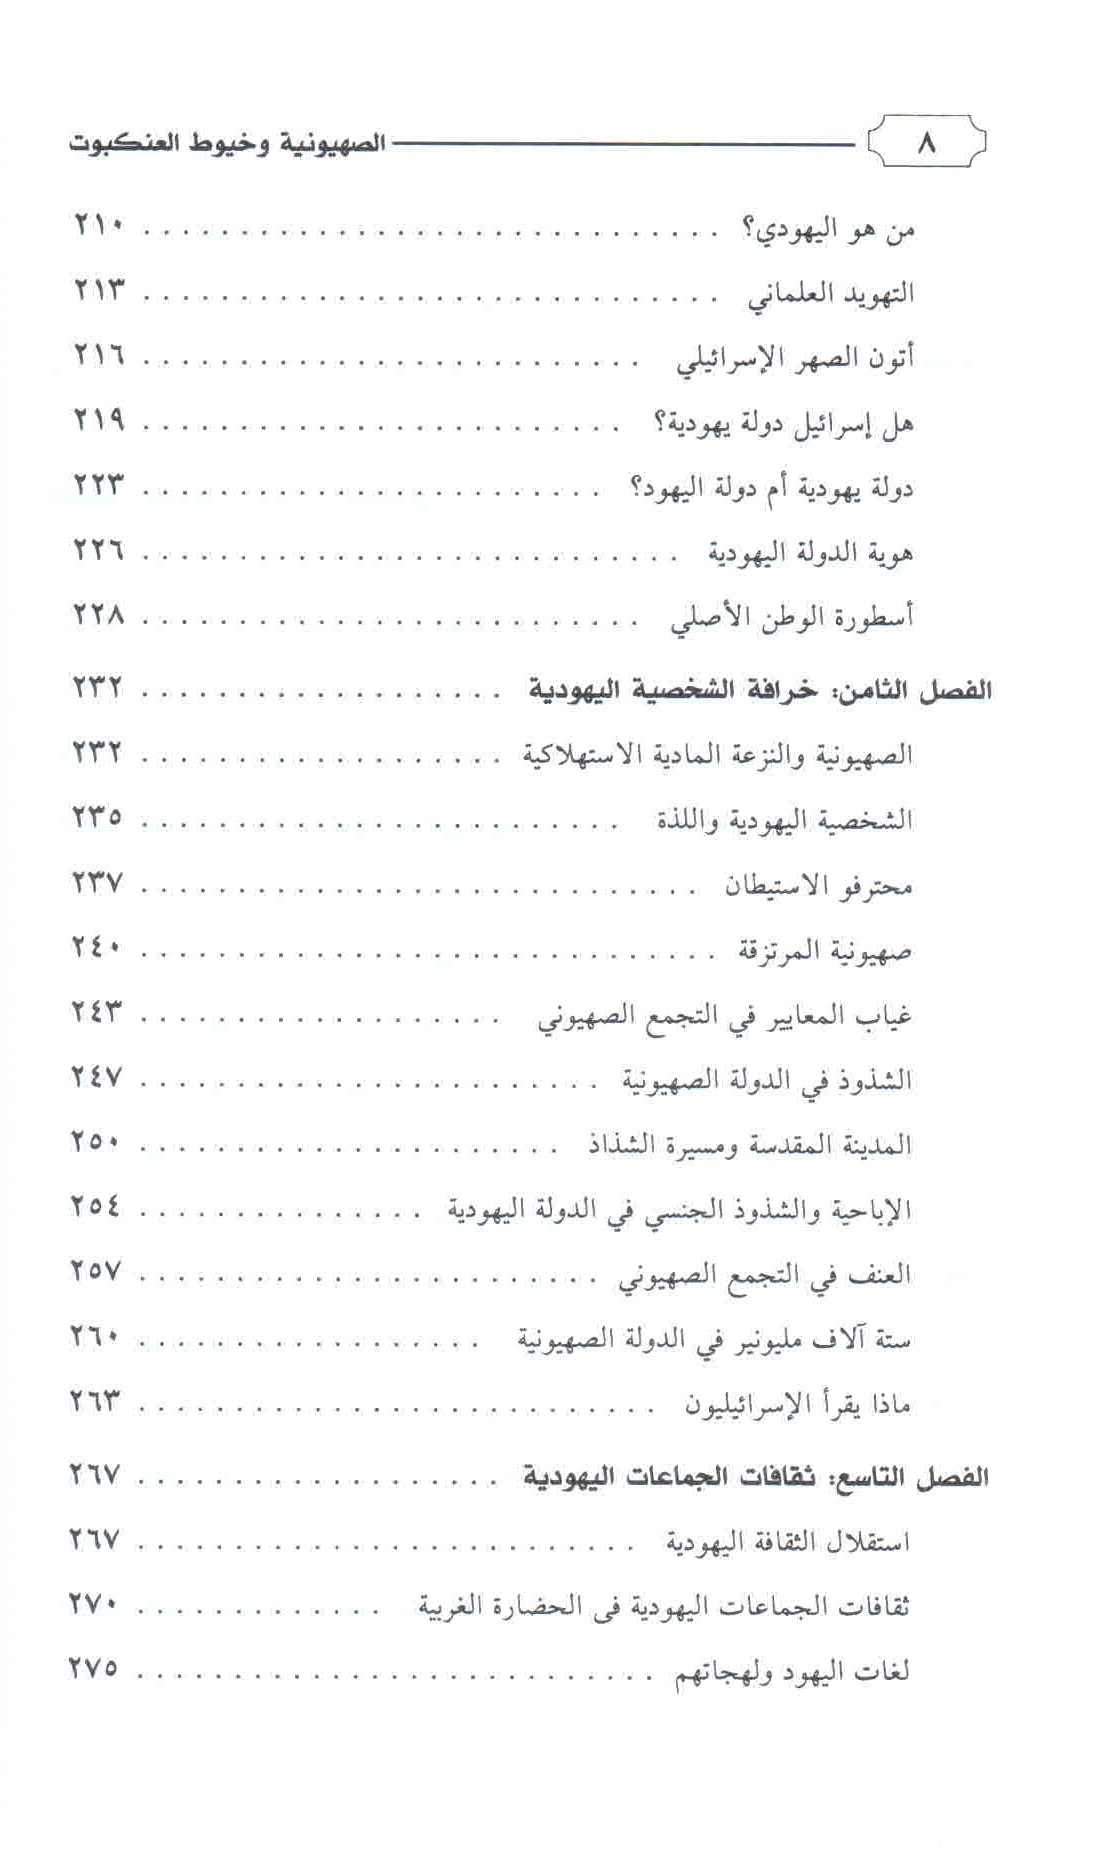 قائمة محتويات كتاب الصهيونية وخيوط العنكبوت ص. 8.